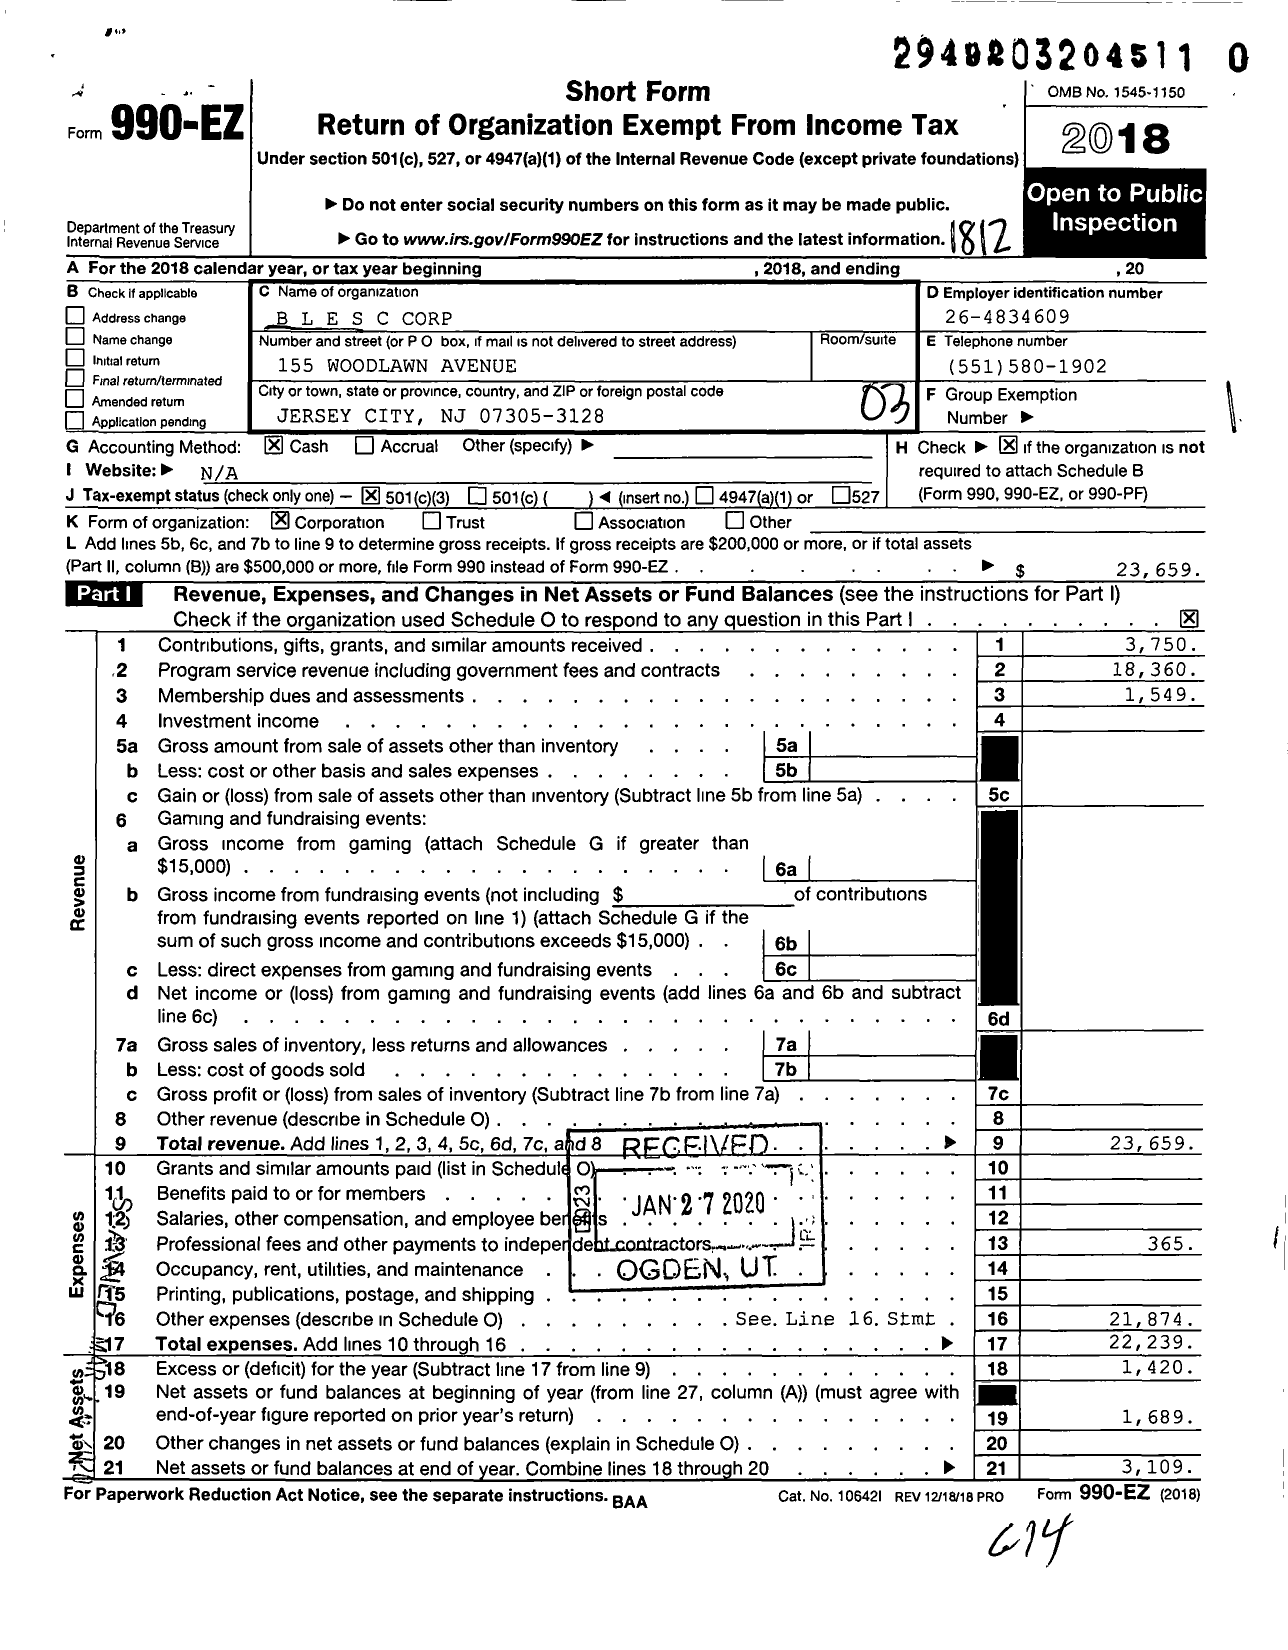 Image of first page of 2018 Form 990EZ for B L E S C Corporation